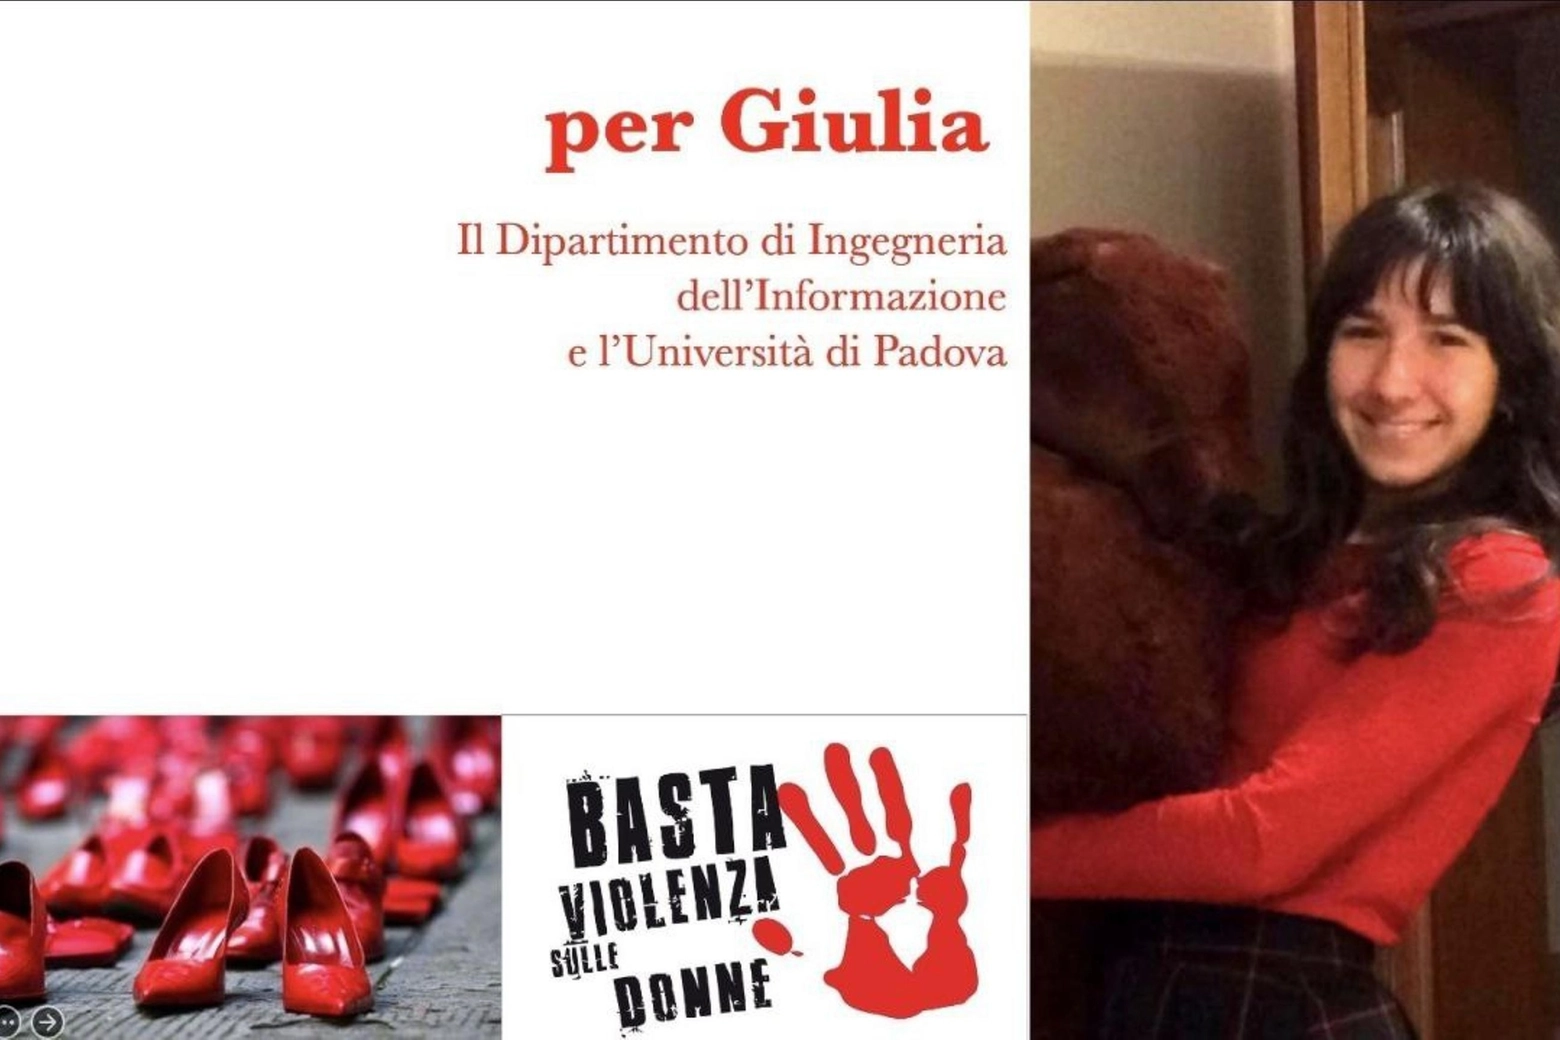 Giulia: Università di Padova, domani un minuto di silenzio